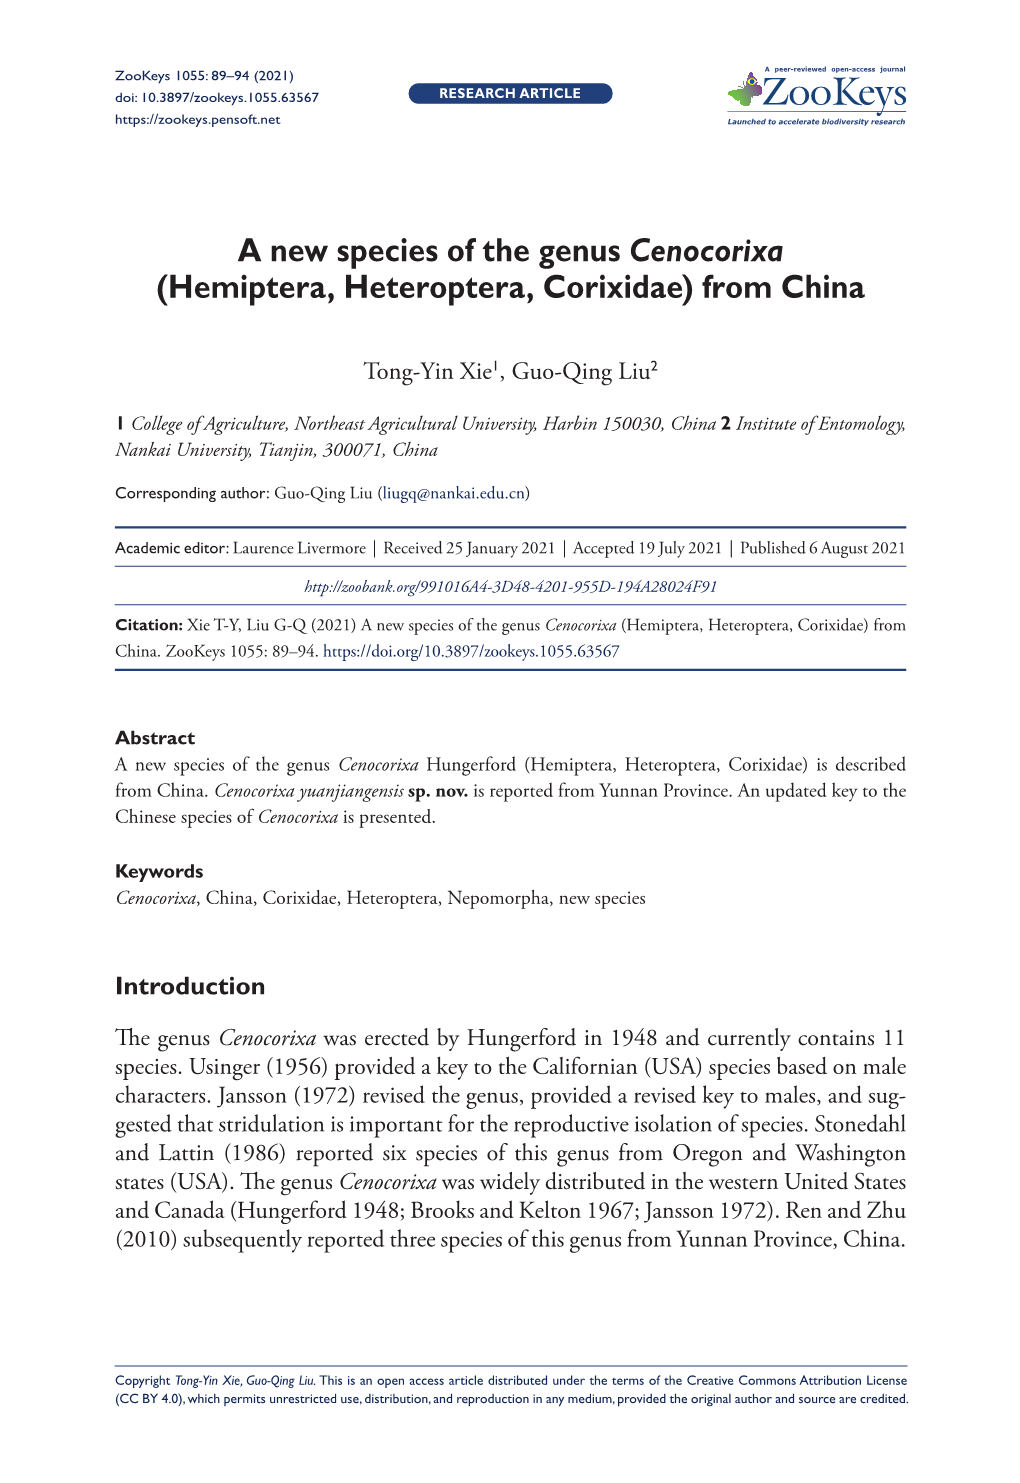 A New Species of the Genus Cenocorixa (Hemiptera, Heteroptera, Corixidae) from China